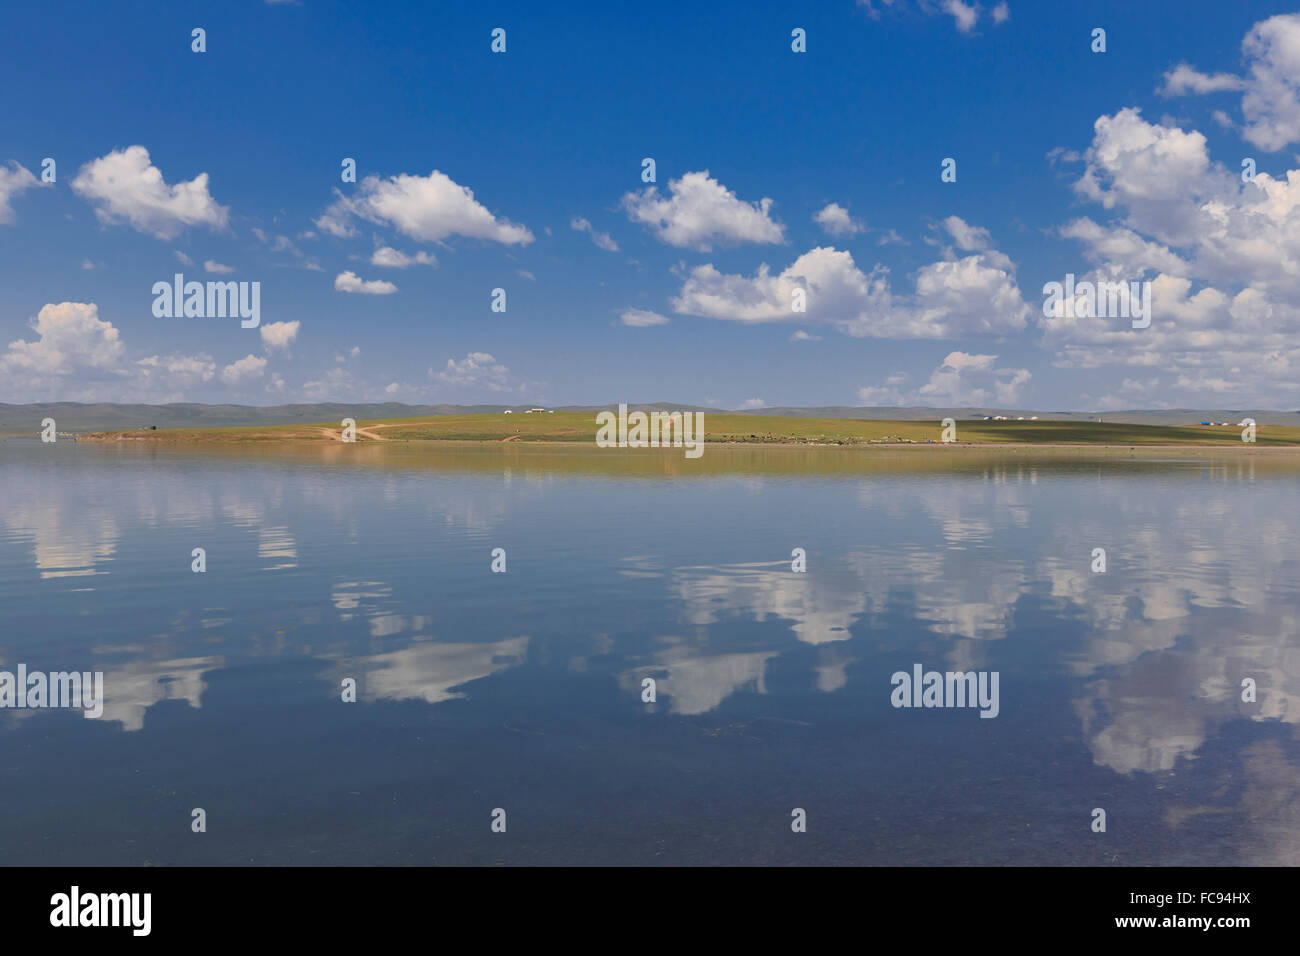 Esponjosas nubes en un cielo de verano azul, que se refleja en un lago, distante refleja gers, Arkhangai, Mongolia, Asia Central, África Foto de stock